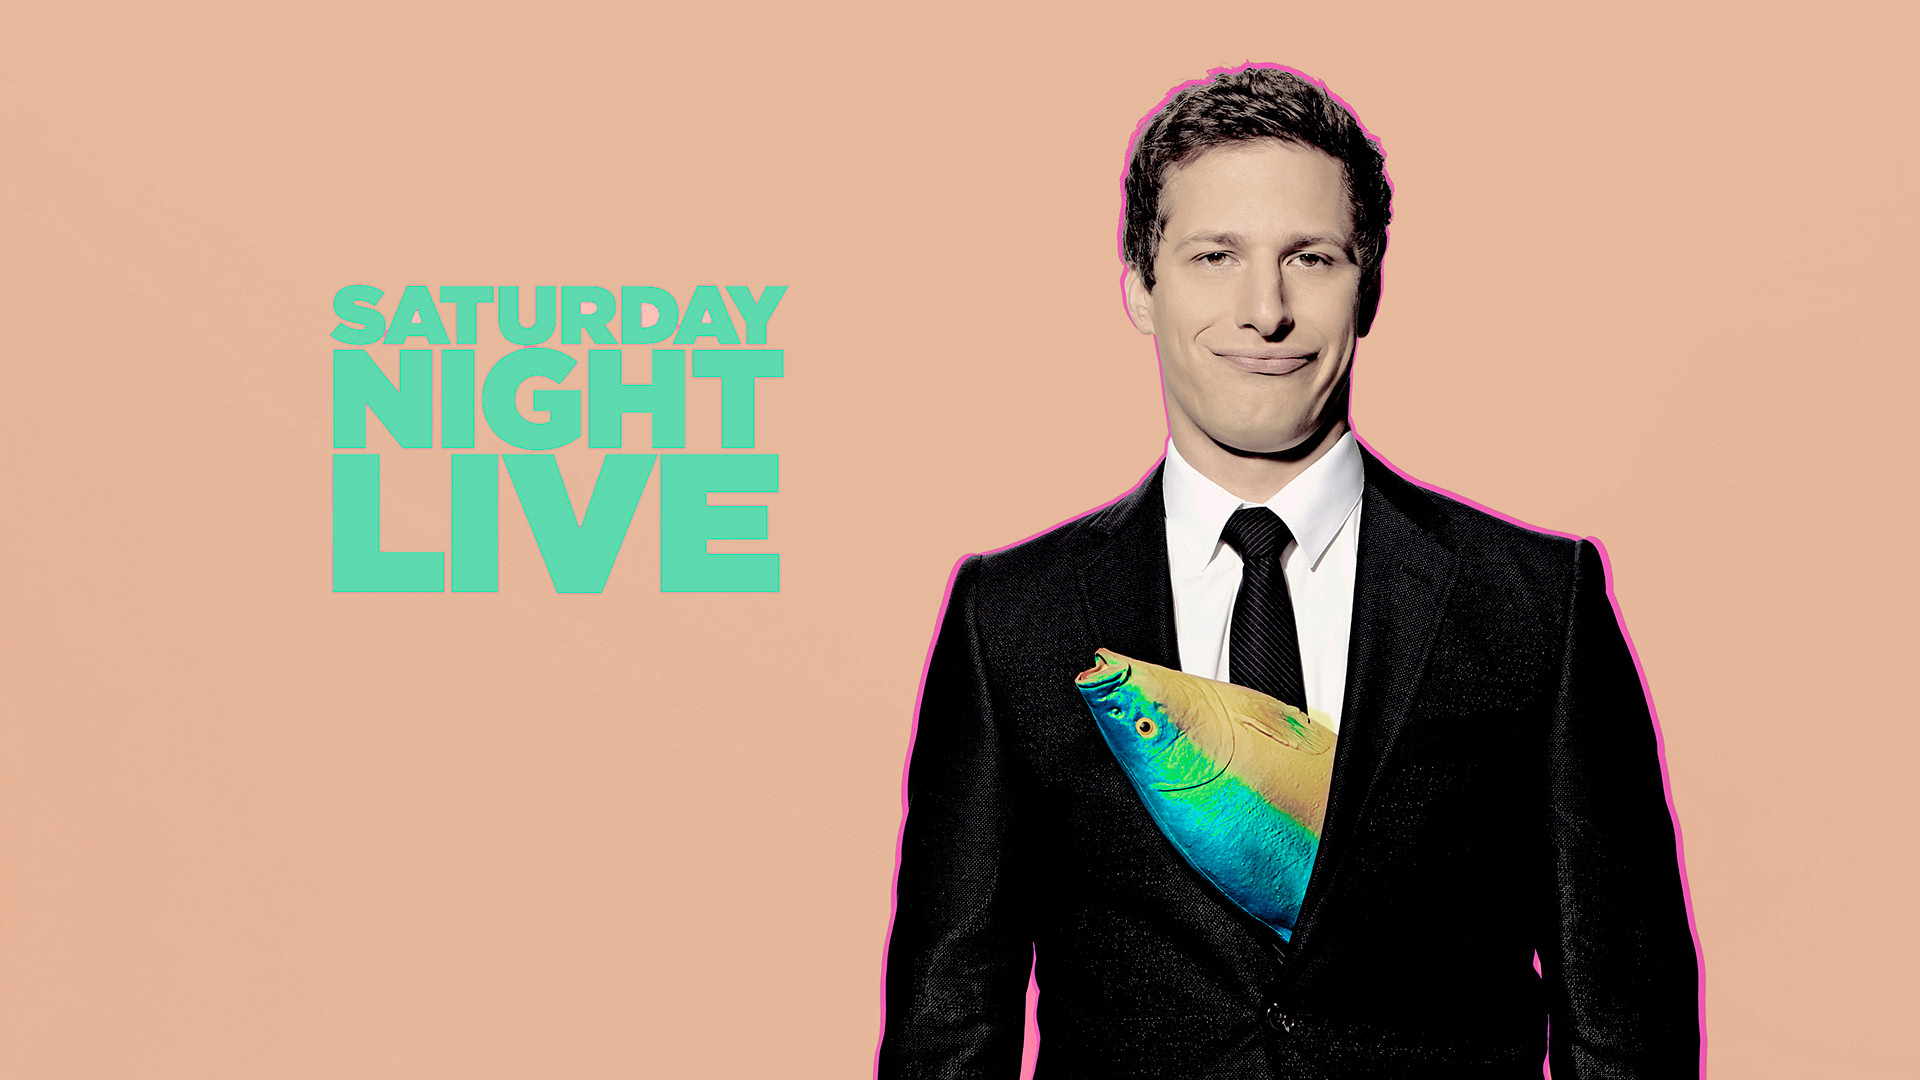 Descarga gratuita de fondo de pantalla para móvil de Series De Televisión, Saturday Night Live.